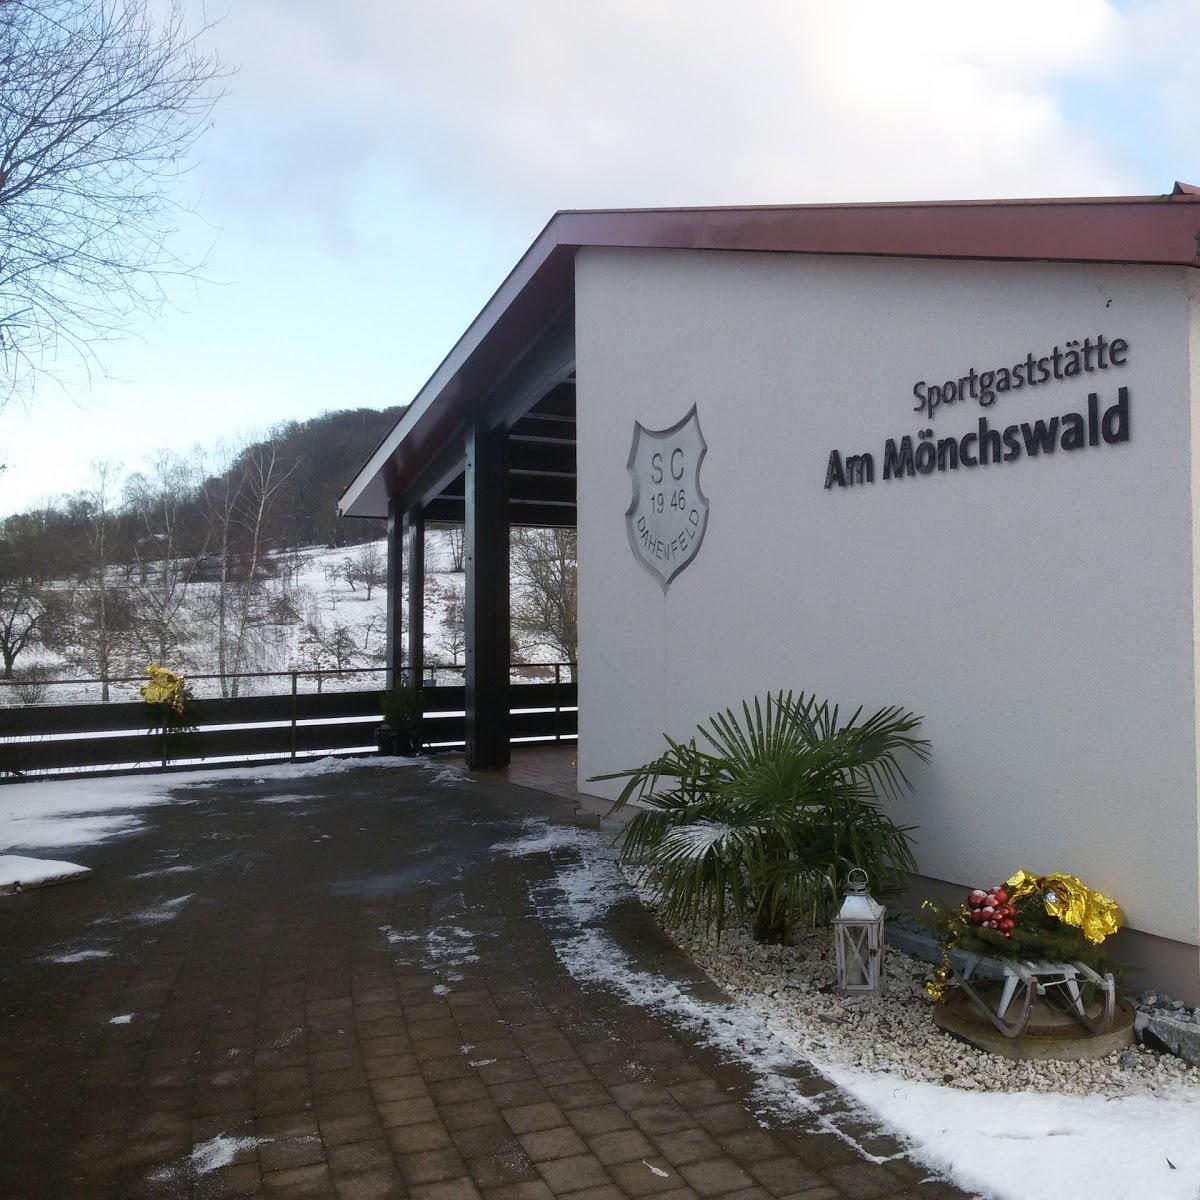 Restaurant "Sportgaststätte am Mönchswald" in Neckarsulm